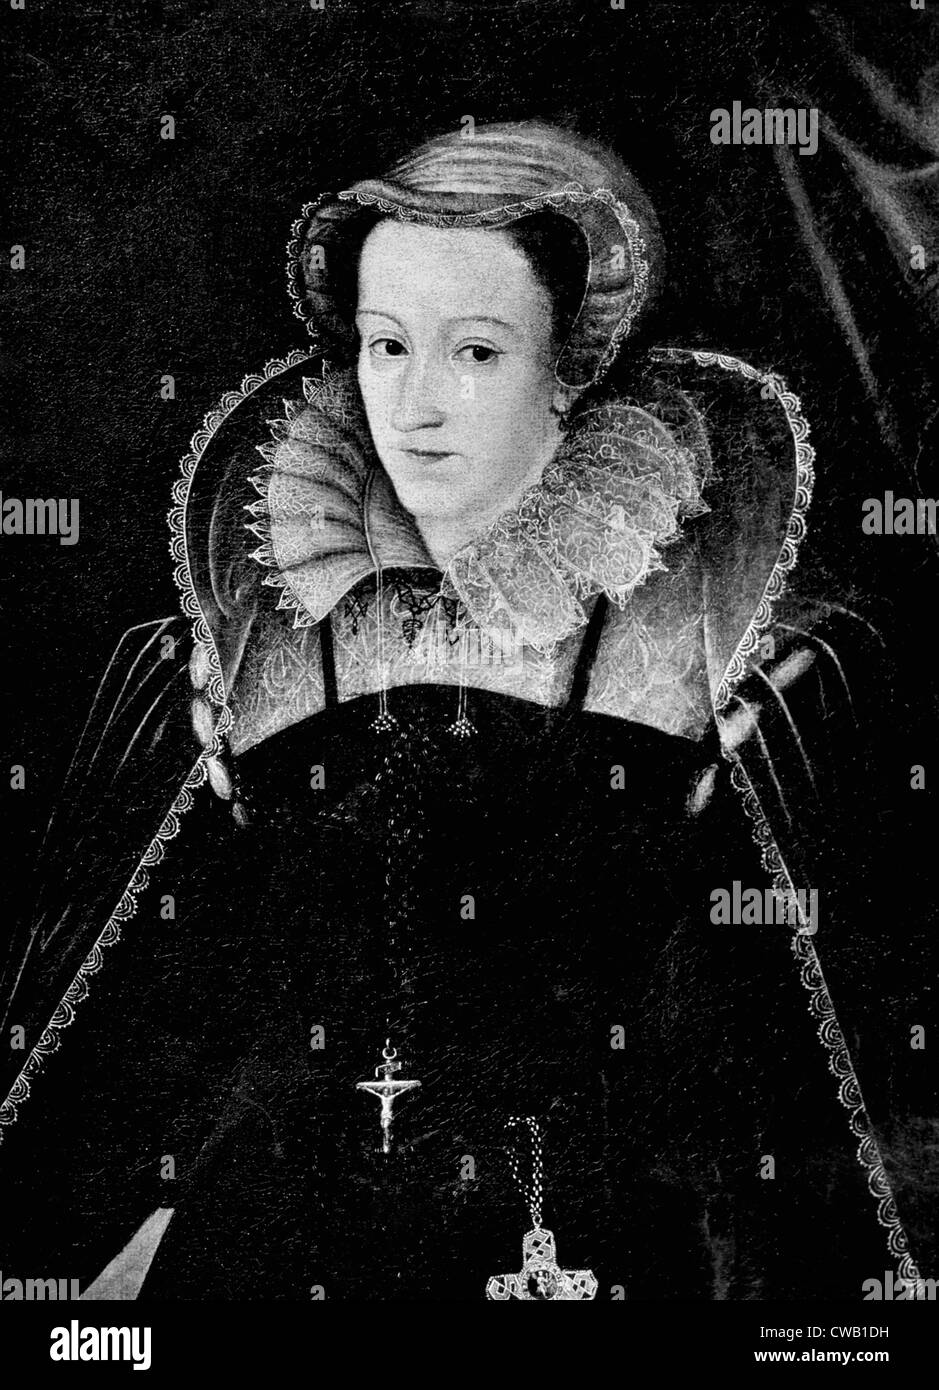 Queen Elizabeth I (1533-1603), Queen of England, 1558-1603. Stock Photo